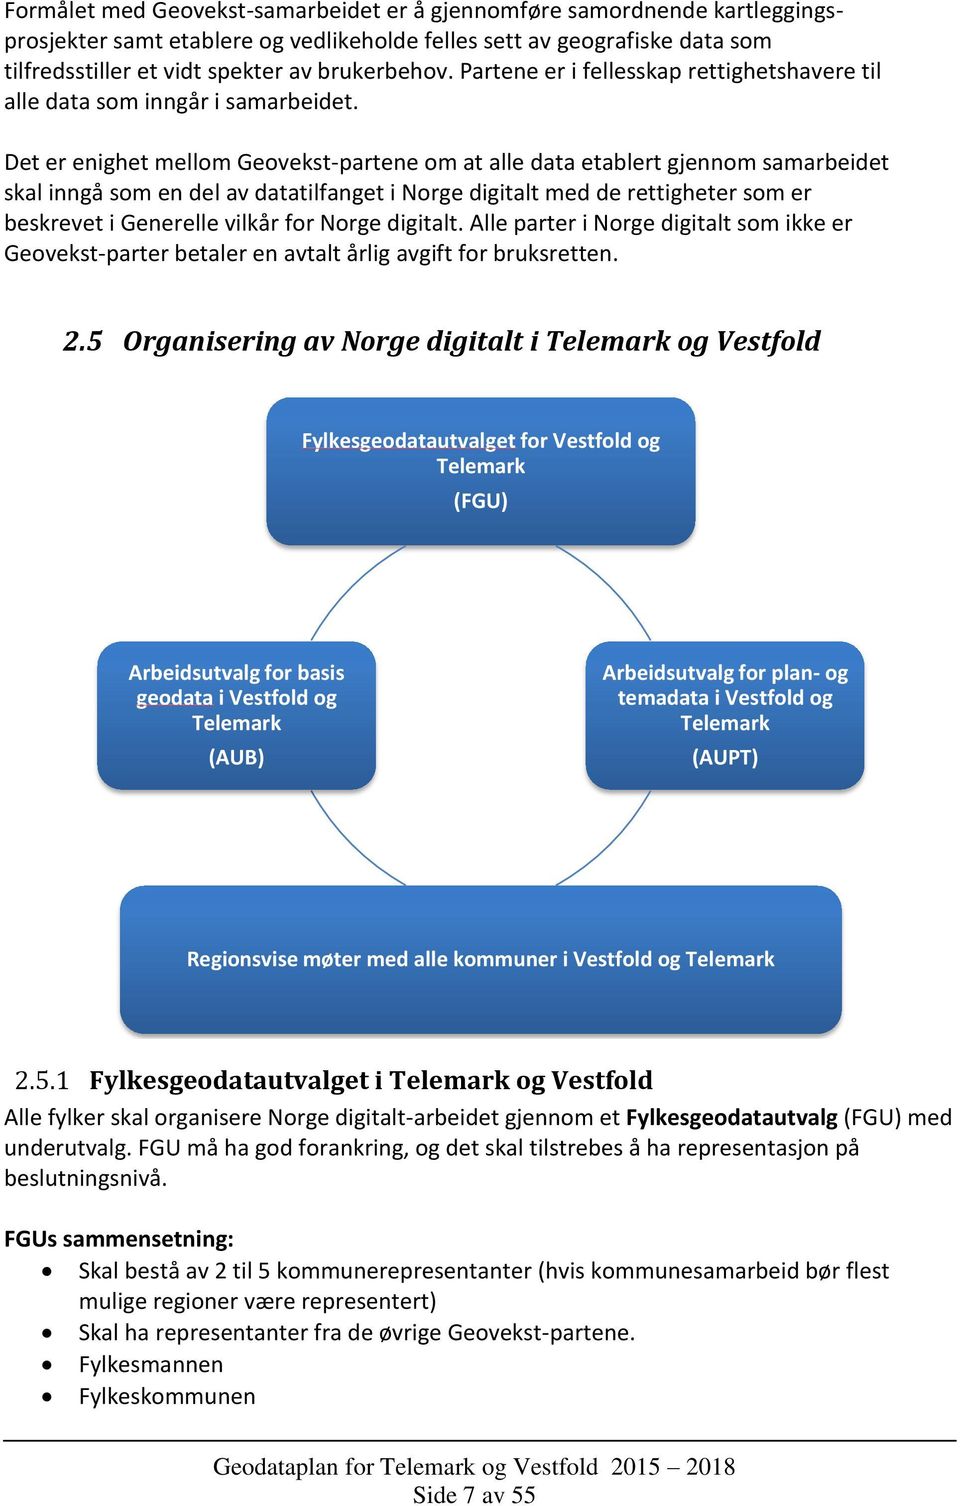 Det er enighet mellom Geovekst-partene om at alle data etablert gjennom samarbeidet skal inngå som en del av datatilfanget i Norge digitalt med de rettigheter som er beskrevet i Generelle vilkår for